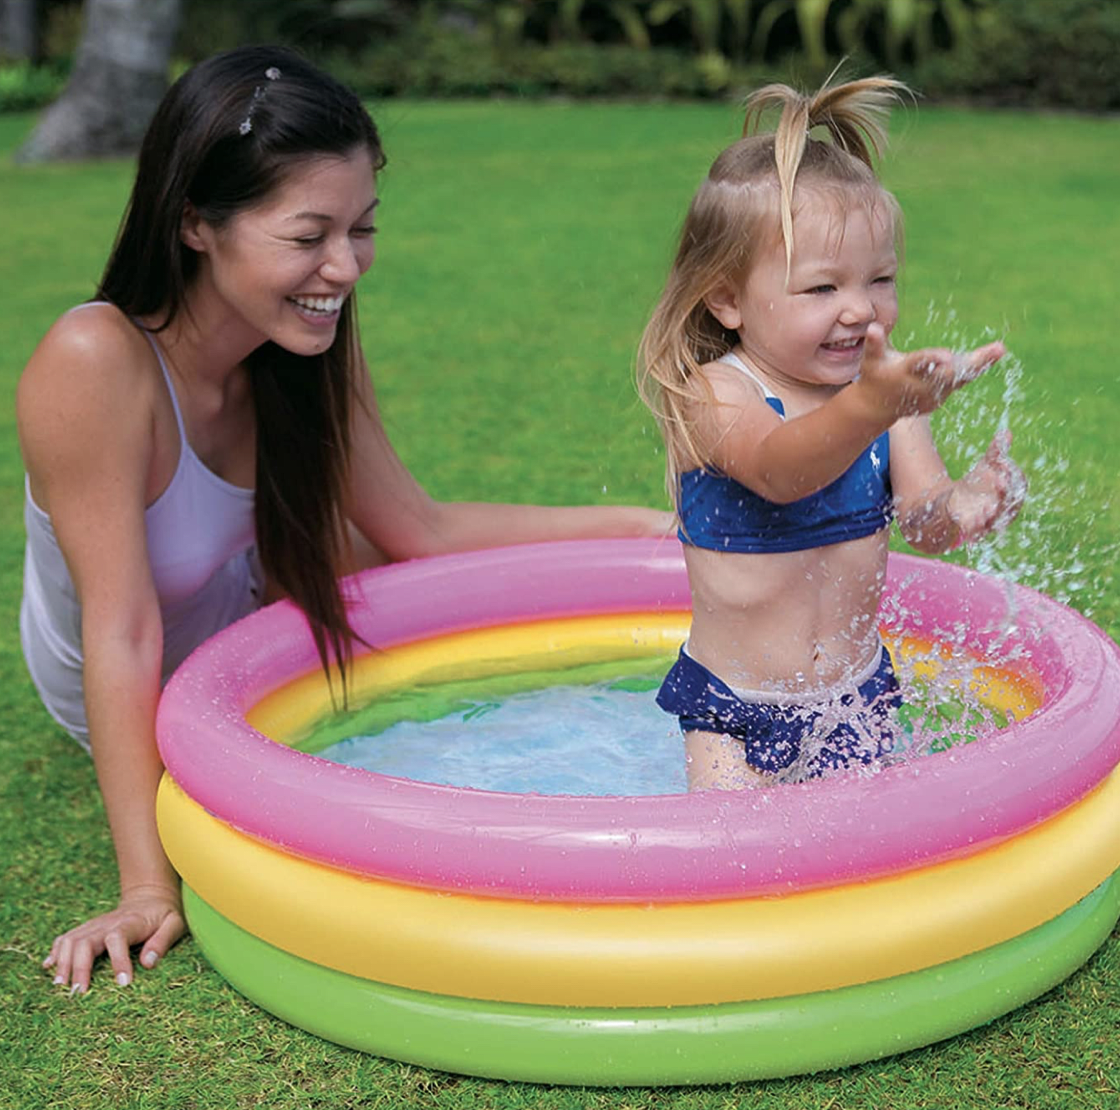 HIWENA Inflatable Kiddie Pool 5ft Durable Kids Pool Blue & White Baby Pool 